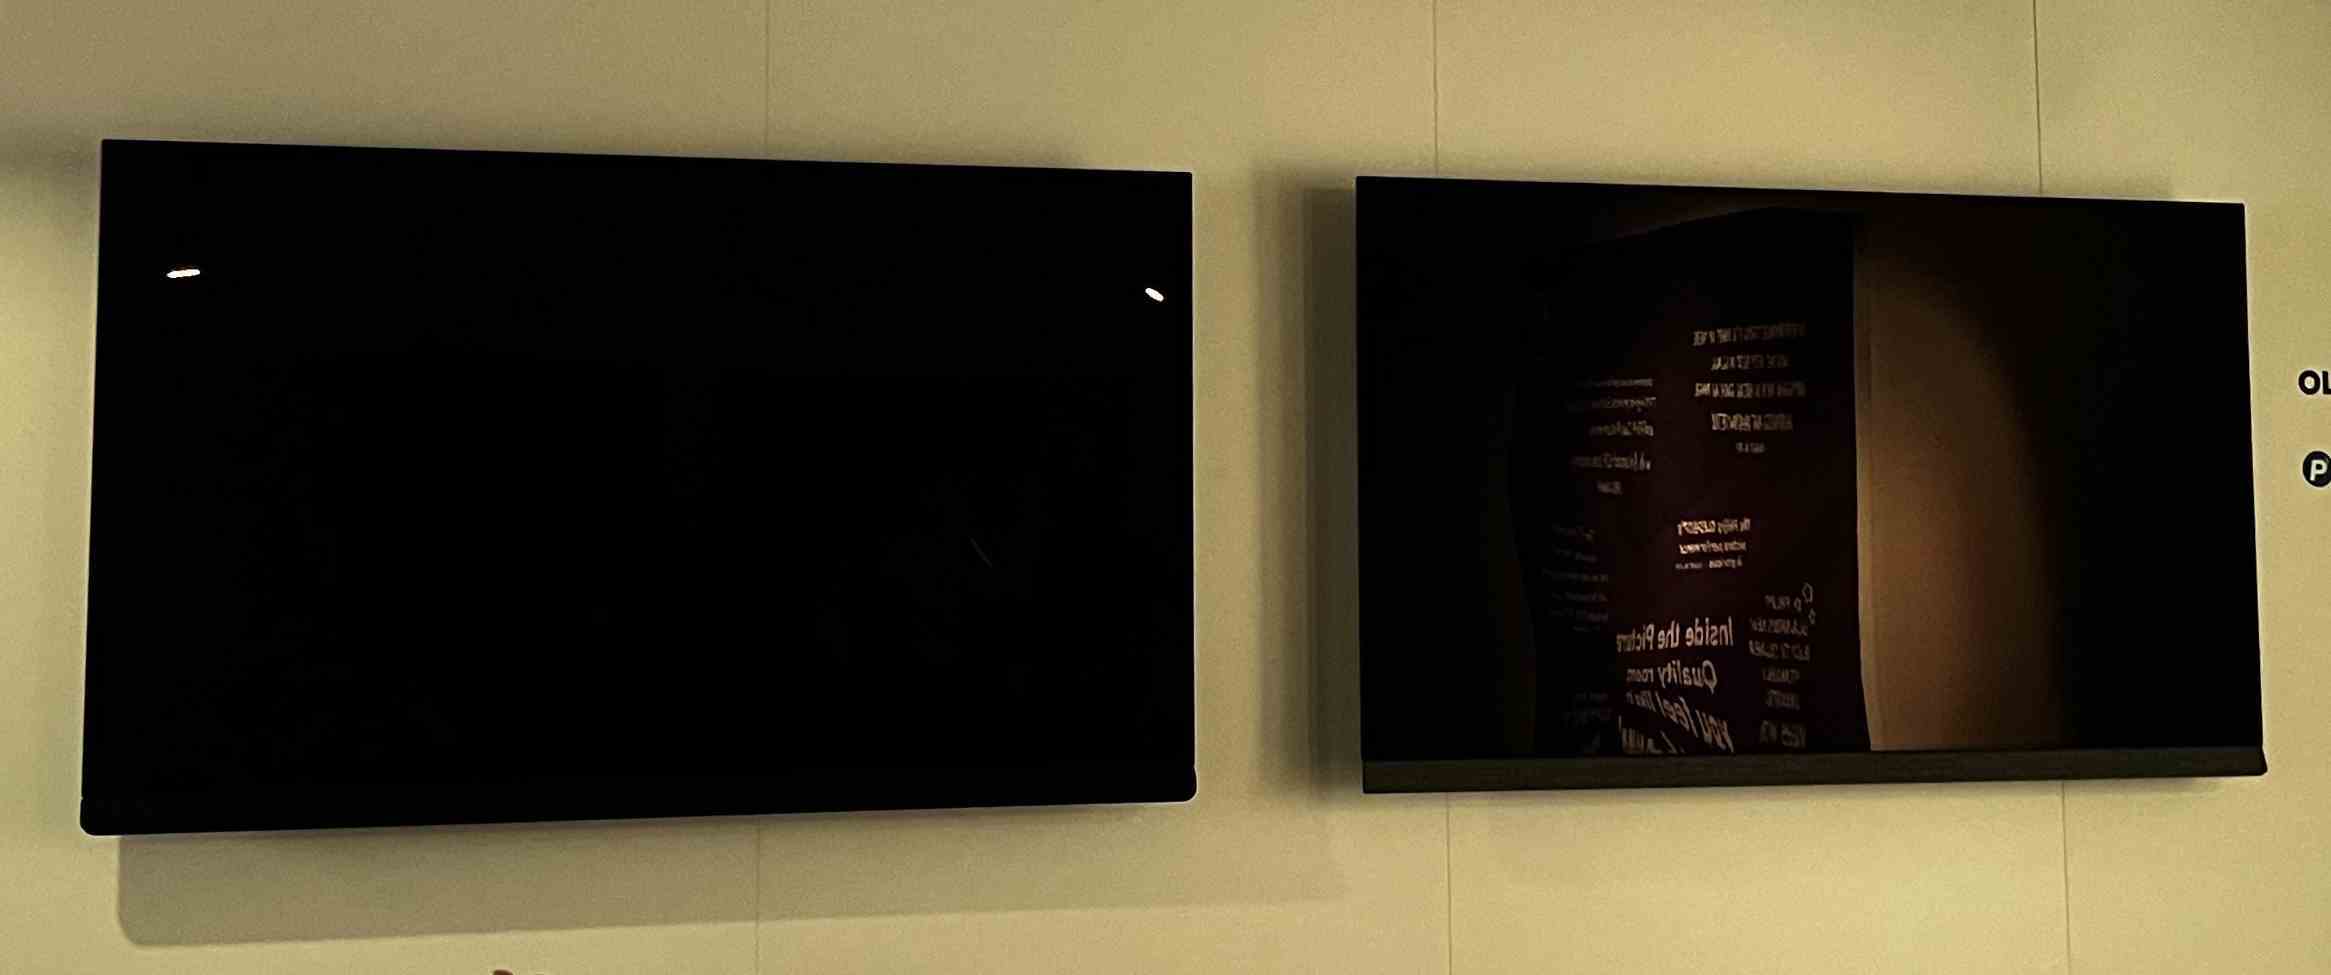 Solda yansımasız Philips OLED908, sağda net yansımalı Philips OLED907 TV